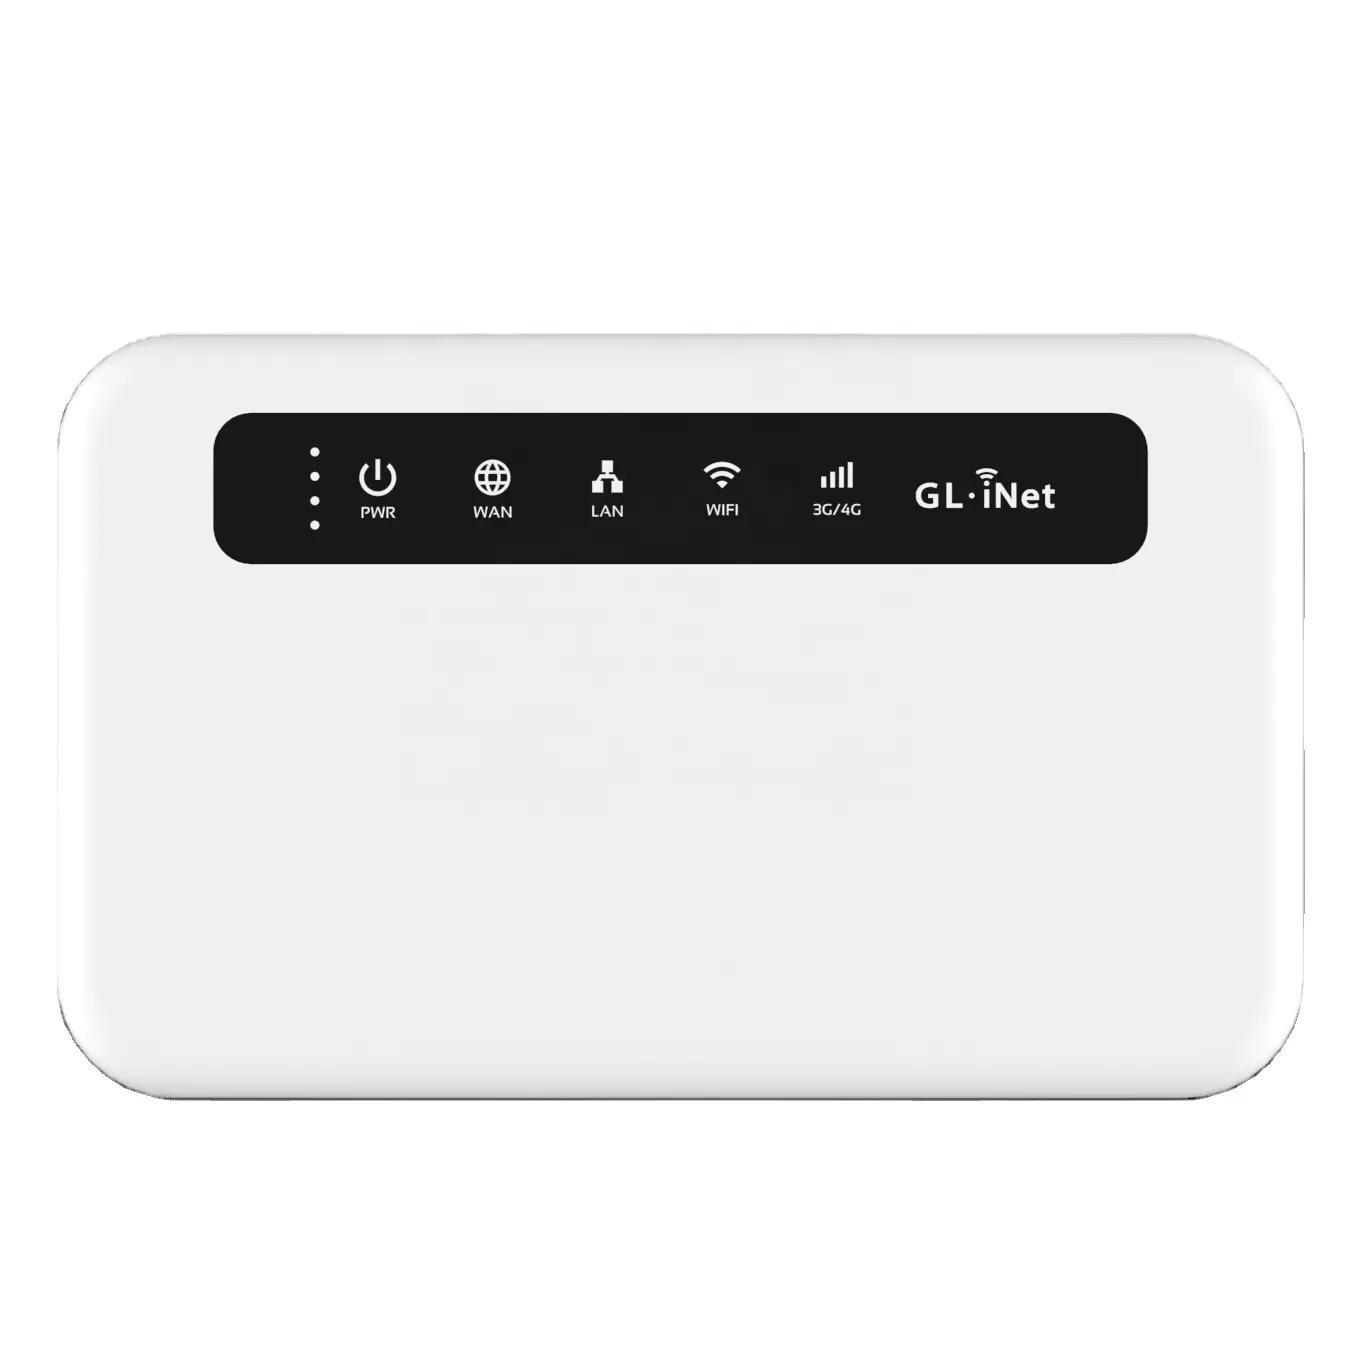 GL-XE300 4G LTE kablosuz yönlendirici VPN Built 4G sim kart taşınabilir IoT ağ geçidi dahili pil ile küresel sürüm yönlendirici